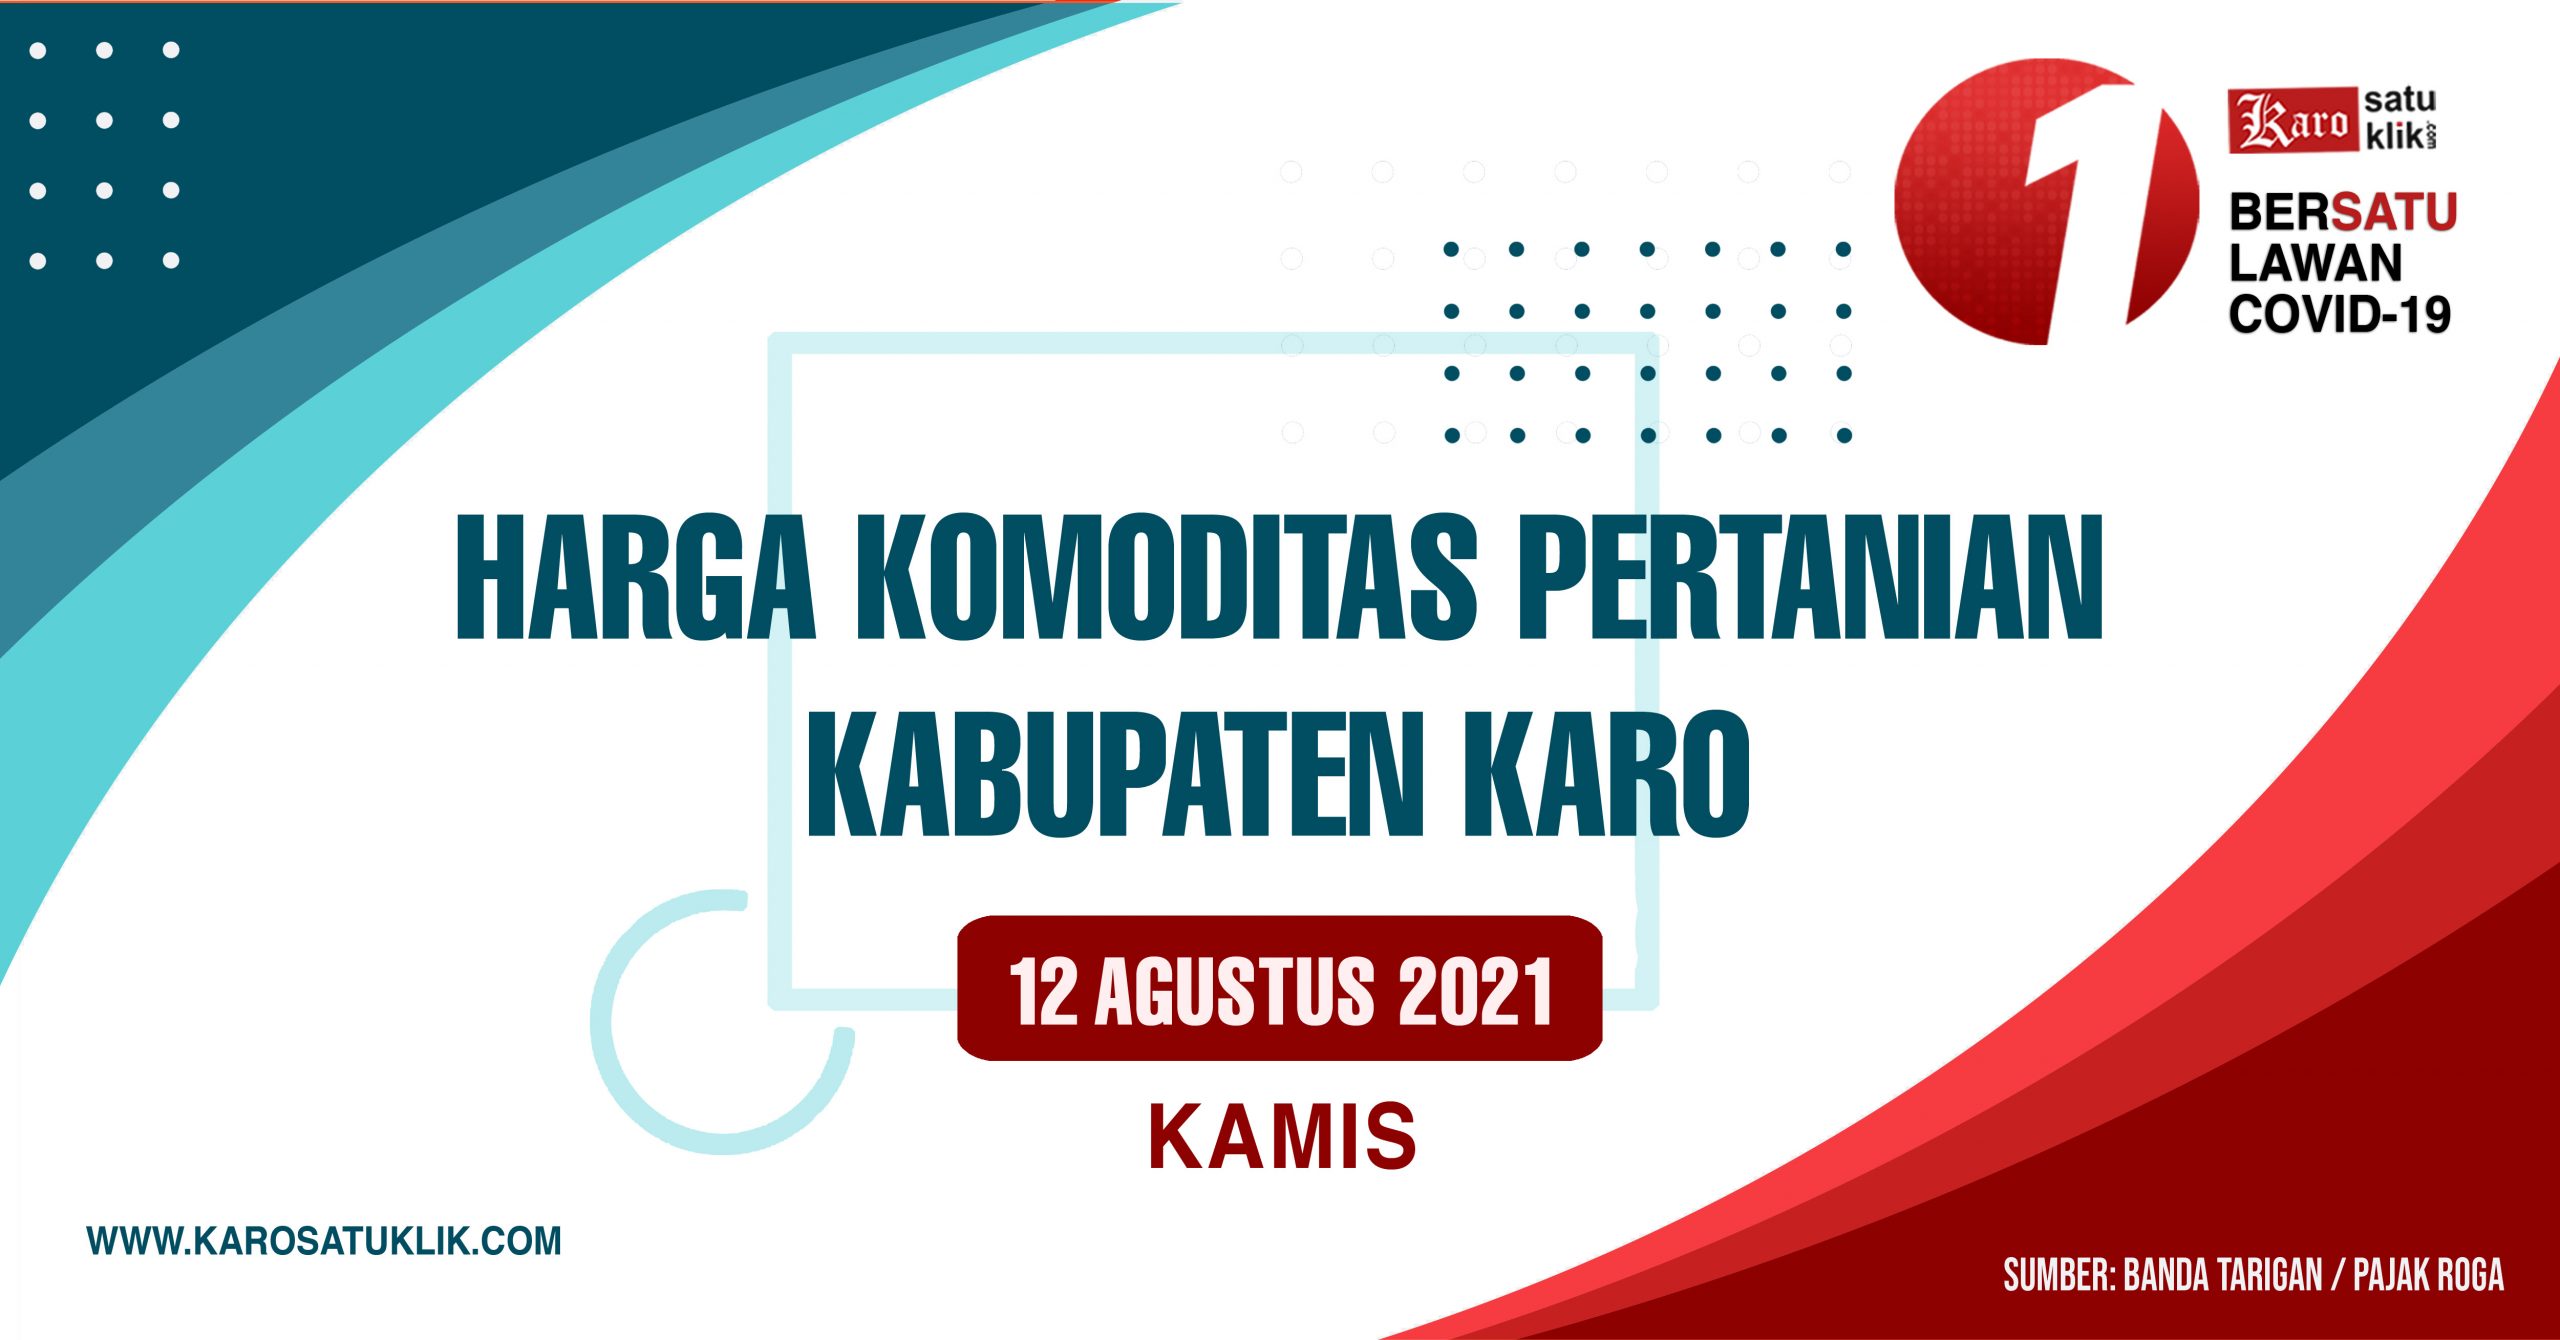 HARGA KOMODITAS PERTANIAN KABUPATEN KARO, Kamis 12 AGUSTUS 2021